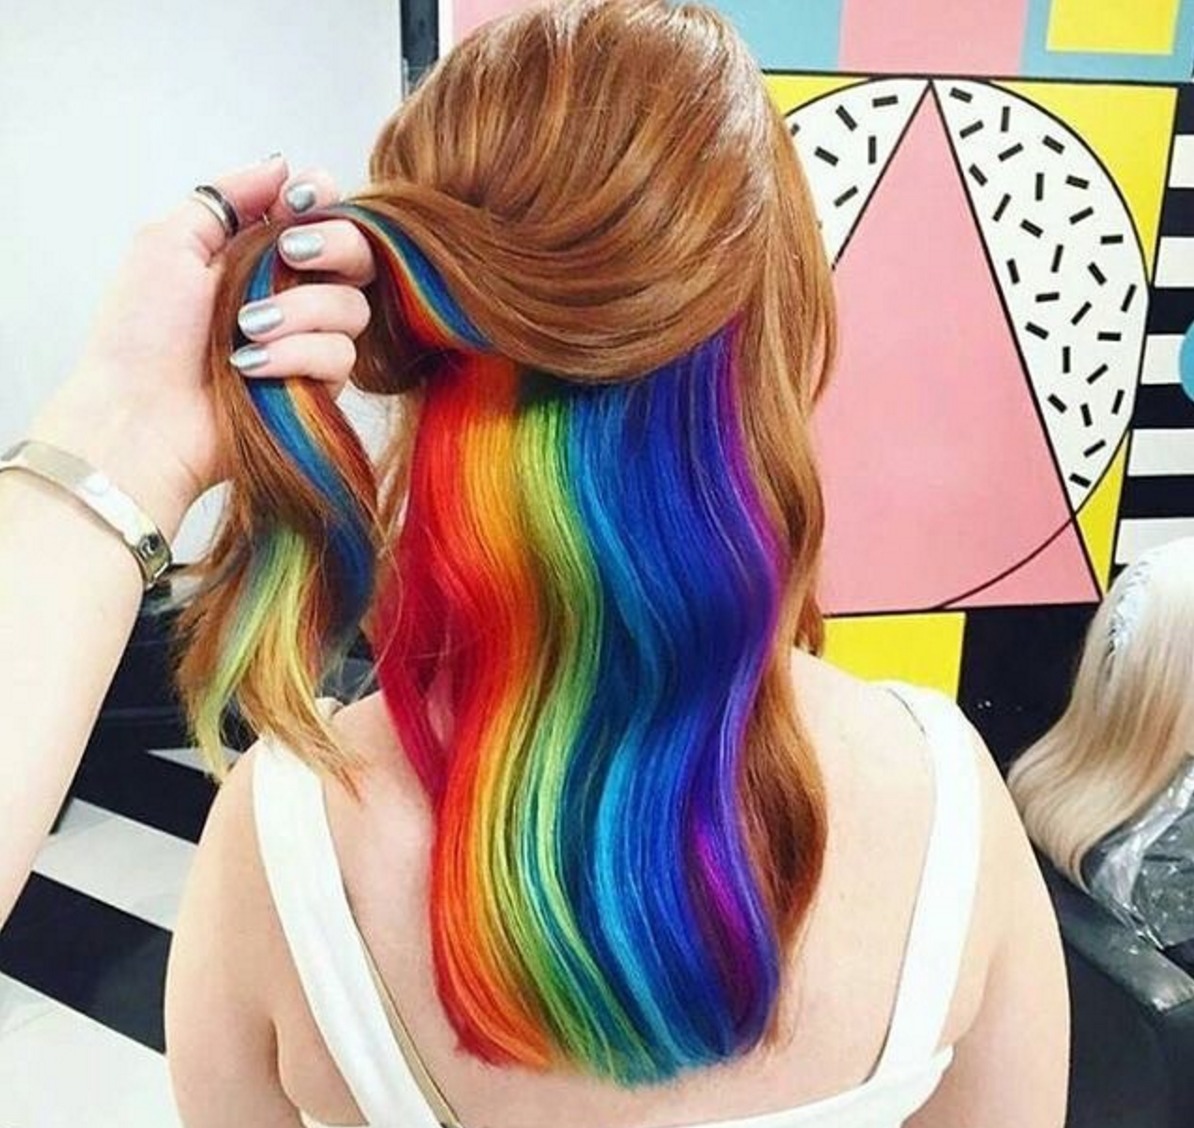 Tendenza capelli 2016: hidden rainbow hair